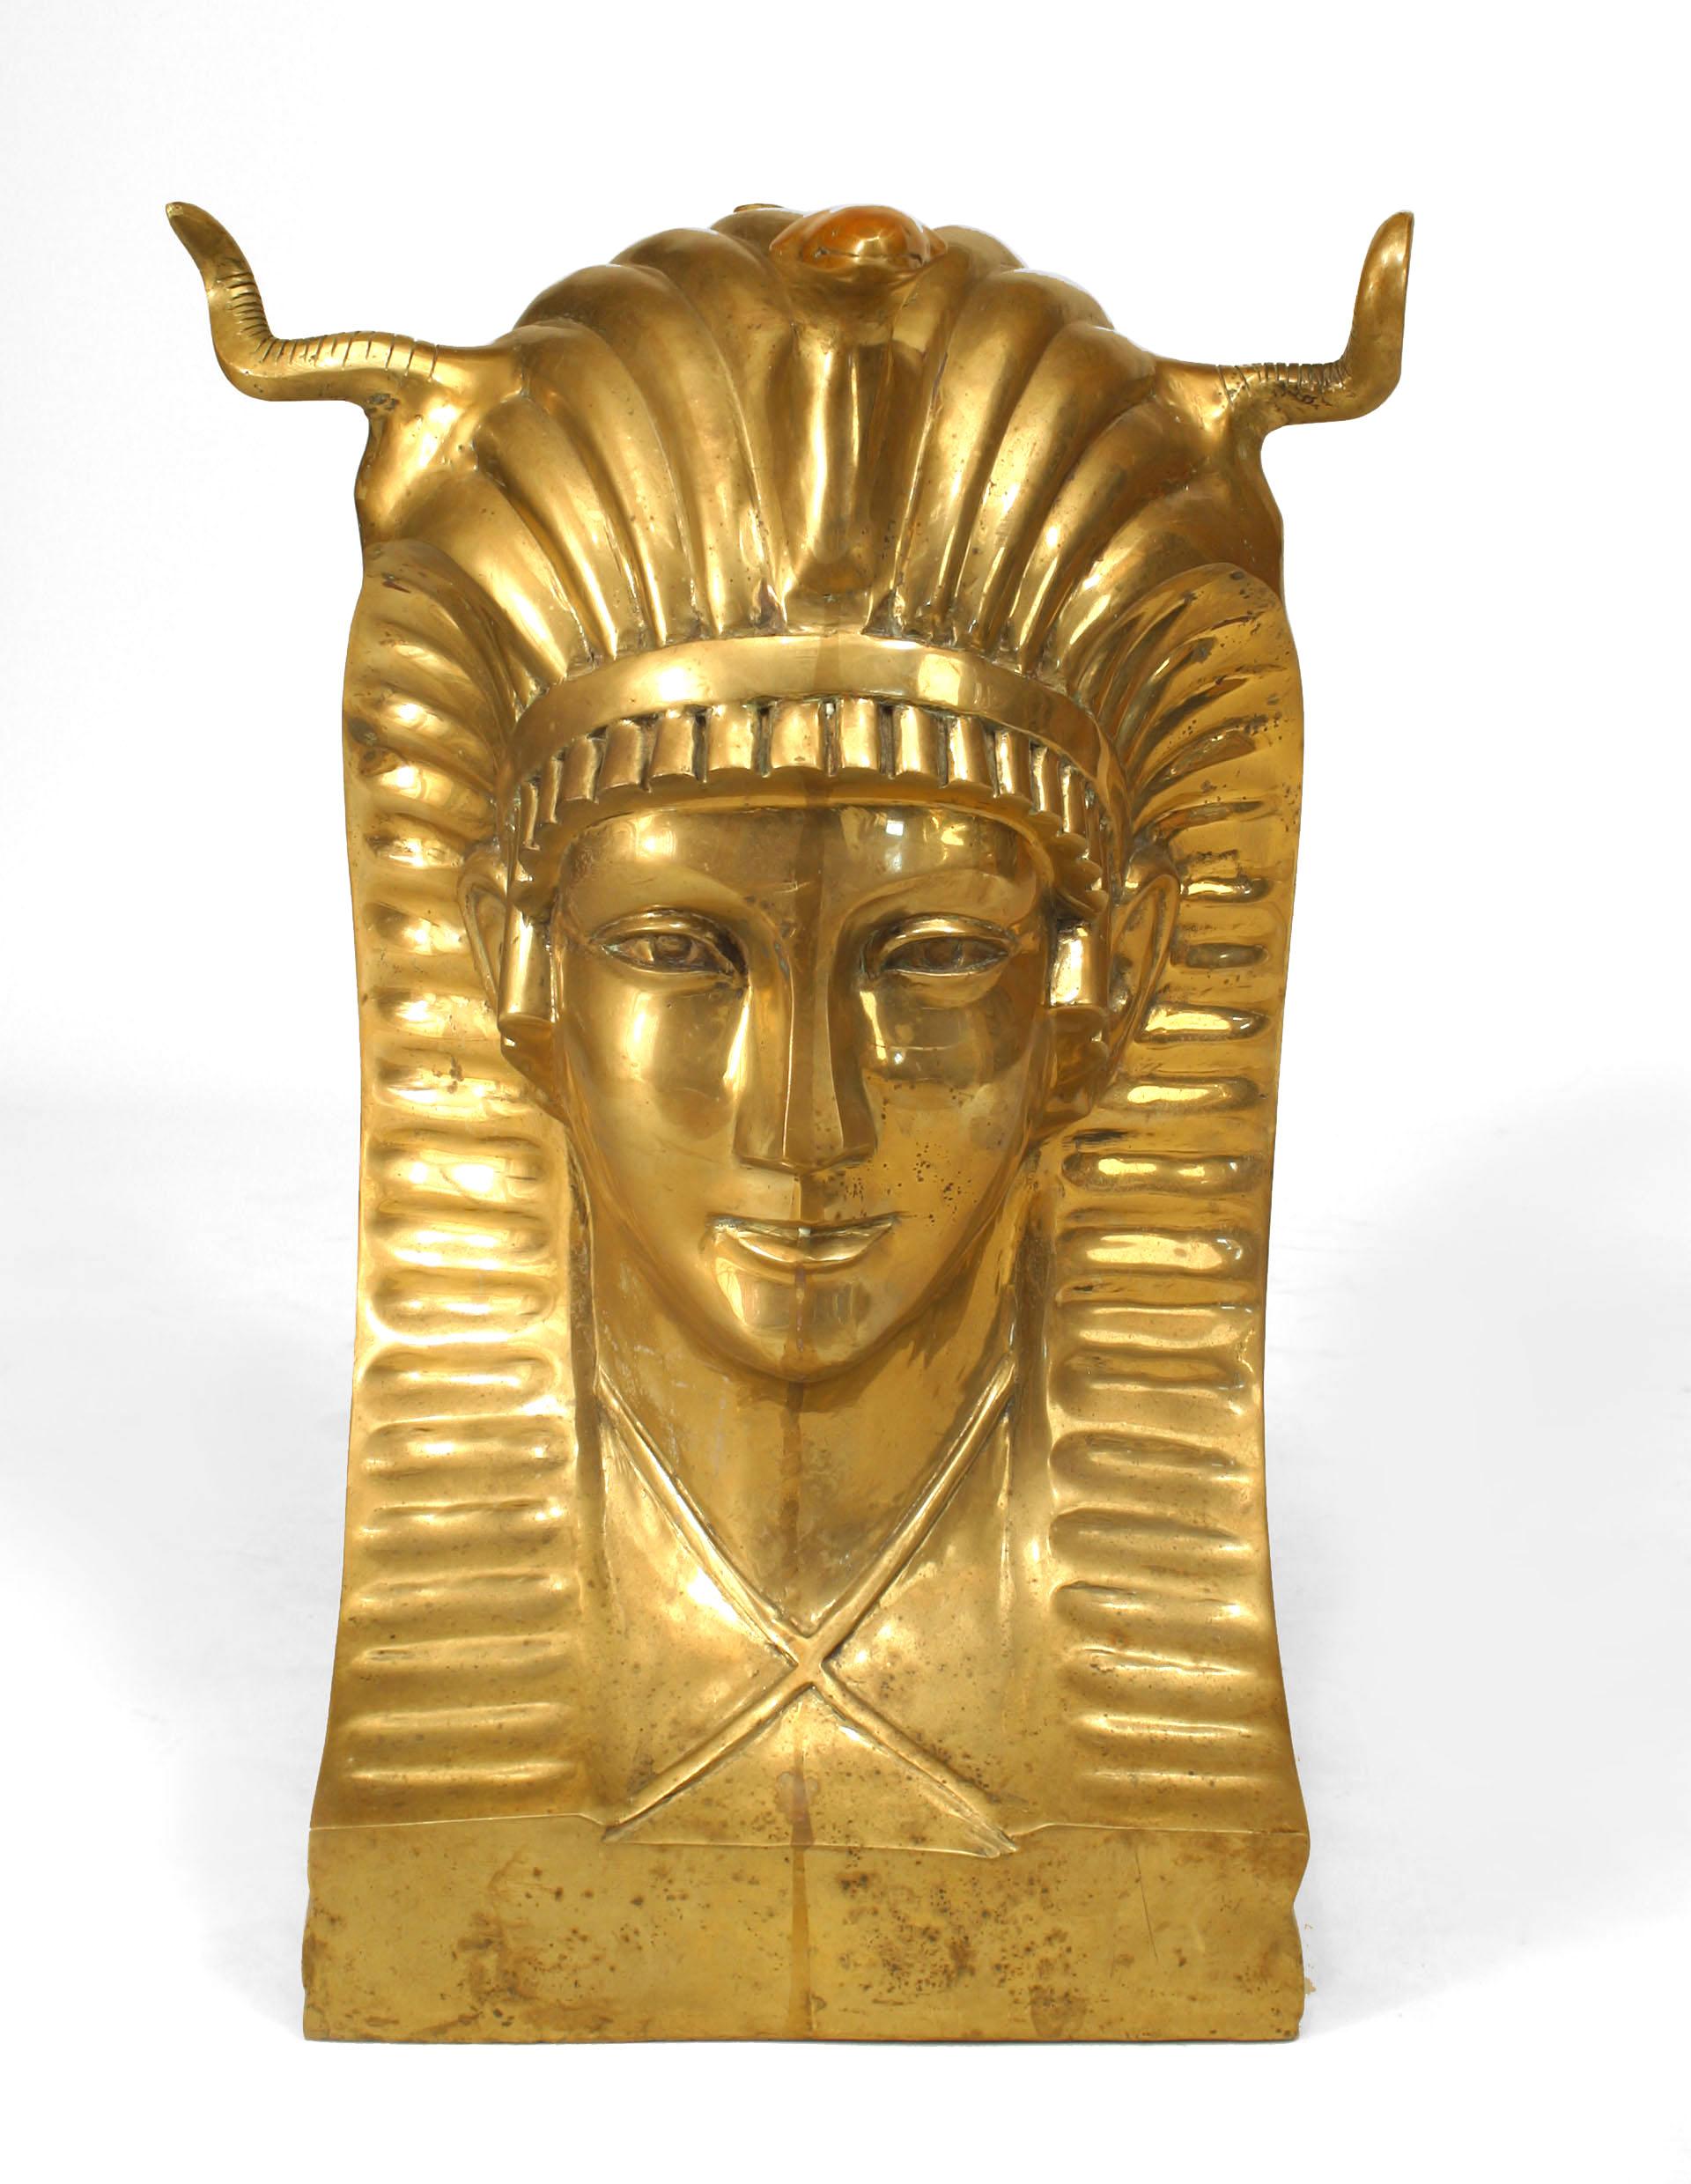 Amerikanischer Esstisch aus der Mitte des Jahrhunderts (1970er Jahre) mit einer rechteckigen Glasplatte, die von zwei großen Bronzebüsten eines Pharaos mit Kopfschmuck getragen wird.